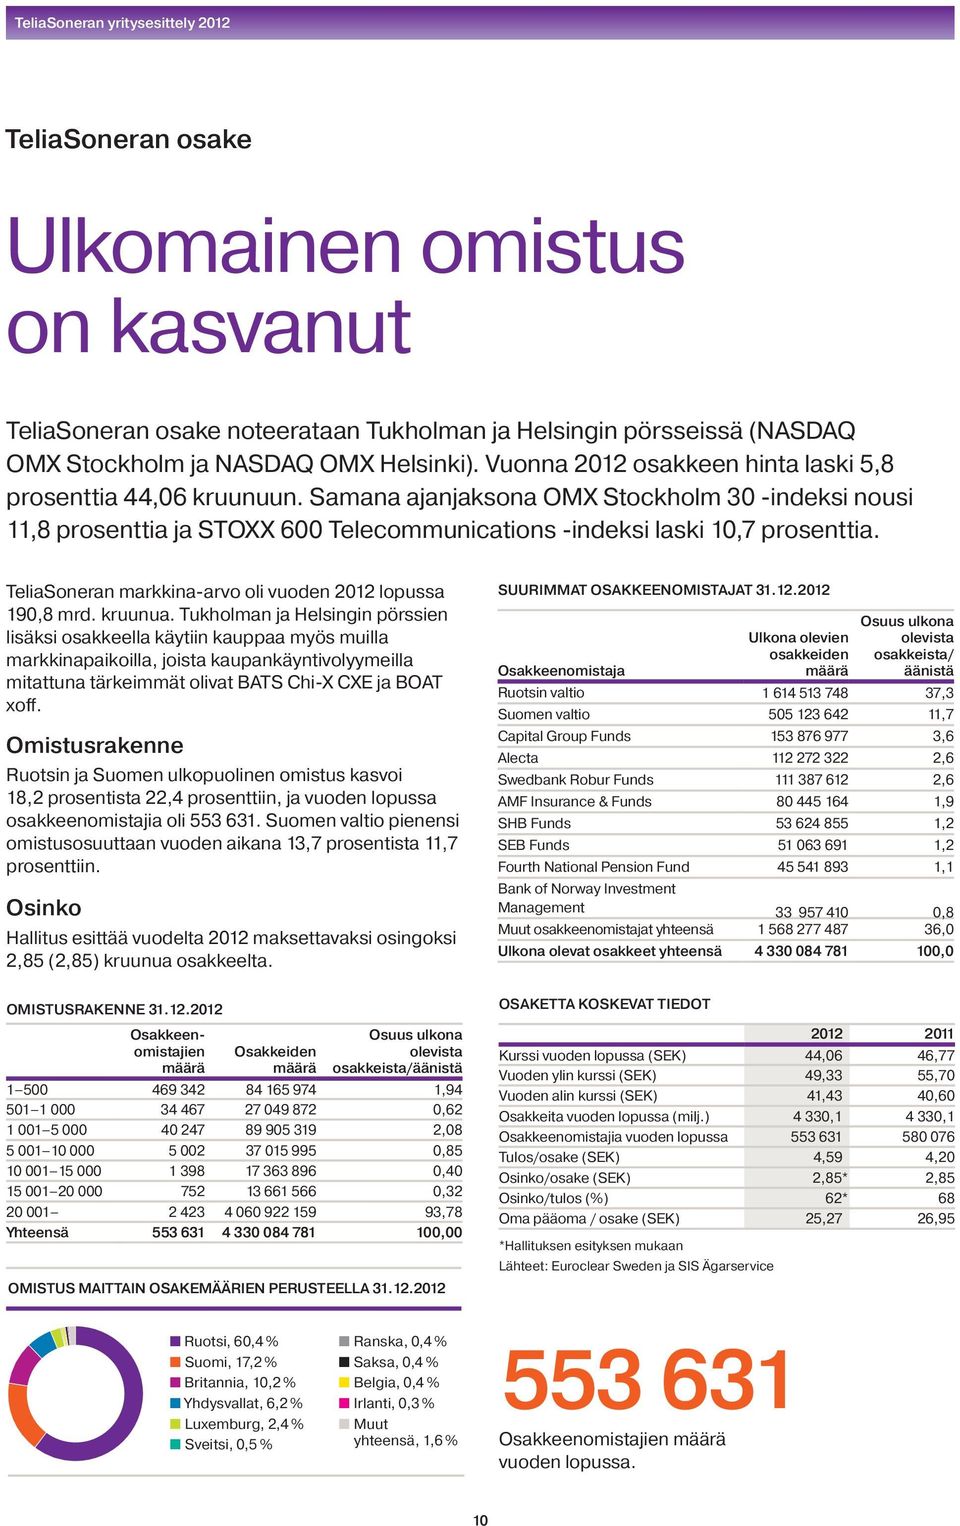 TeliaSoneran markkina-arvo oli vuoden 2012 lopussa 190,8 mrd. kruunua.